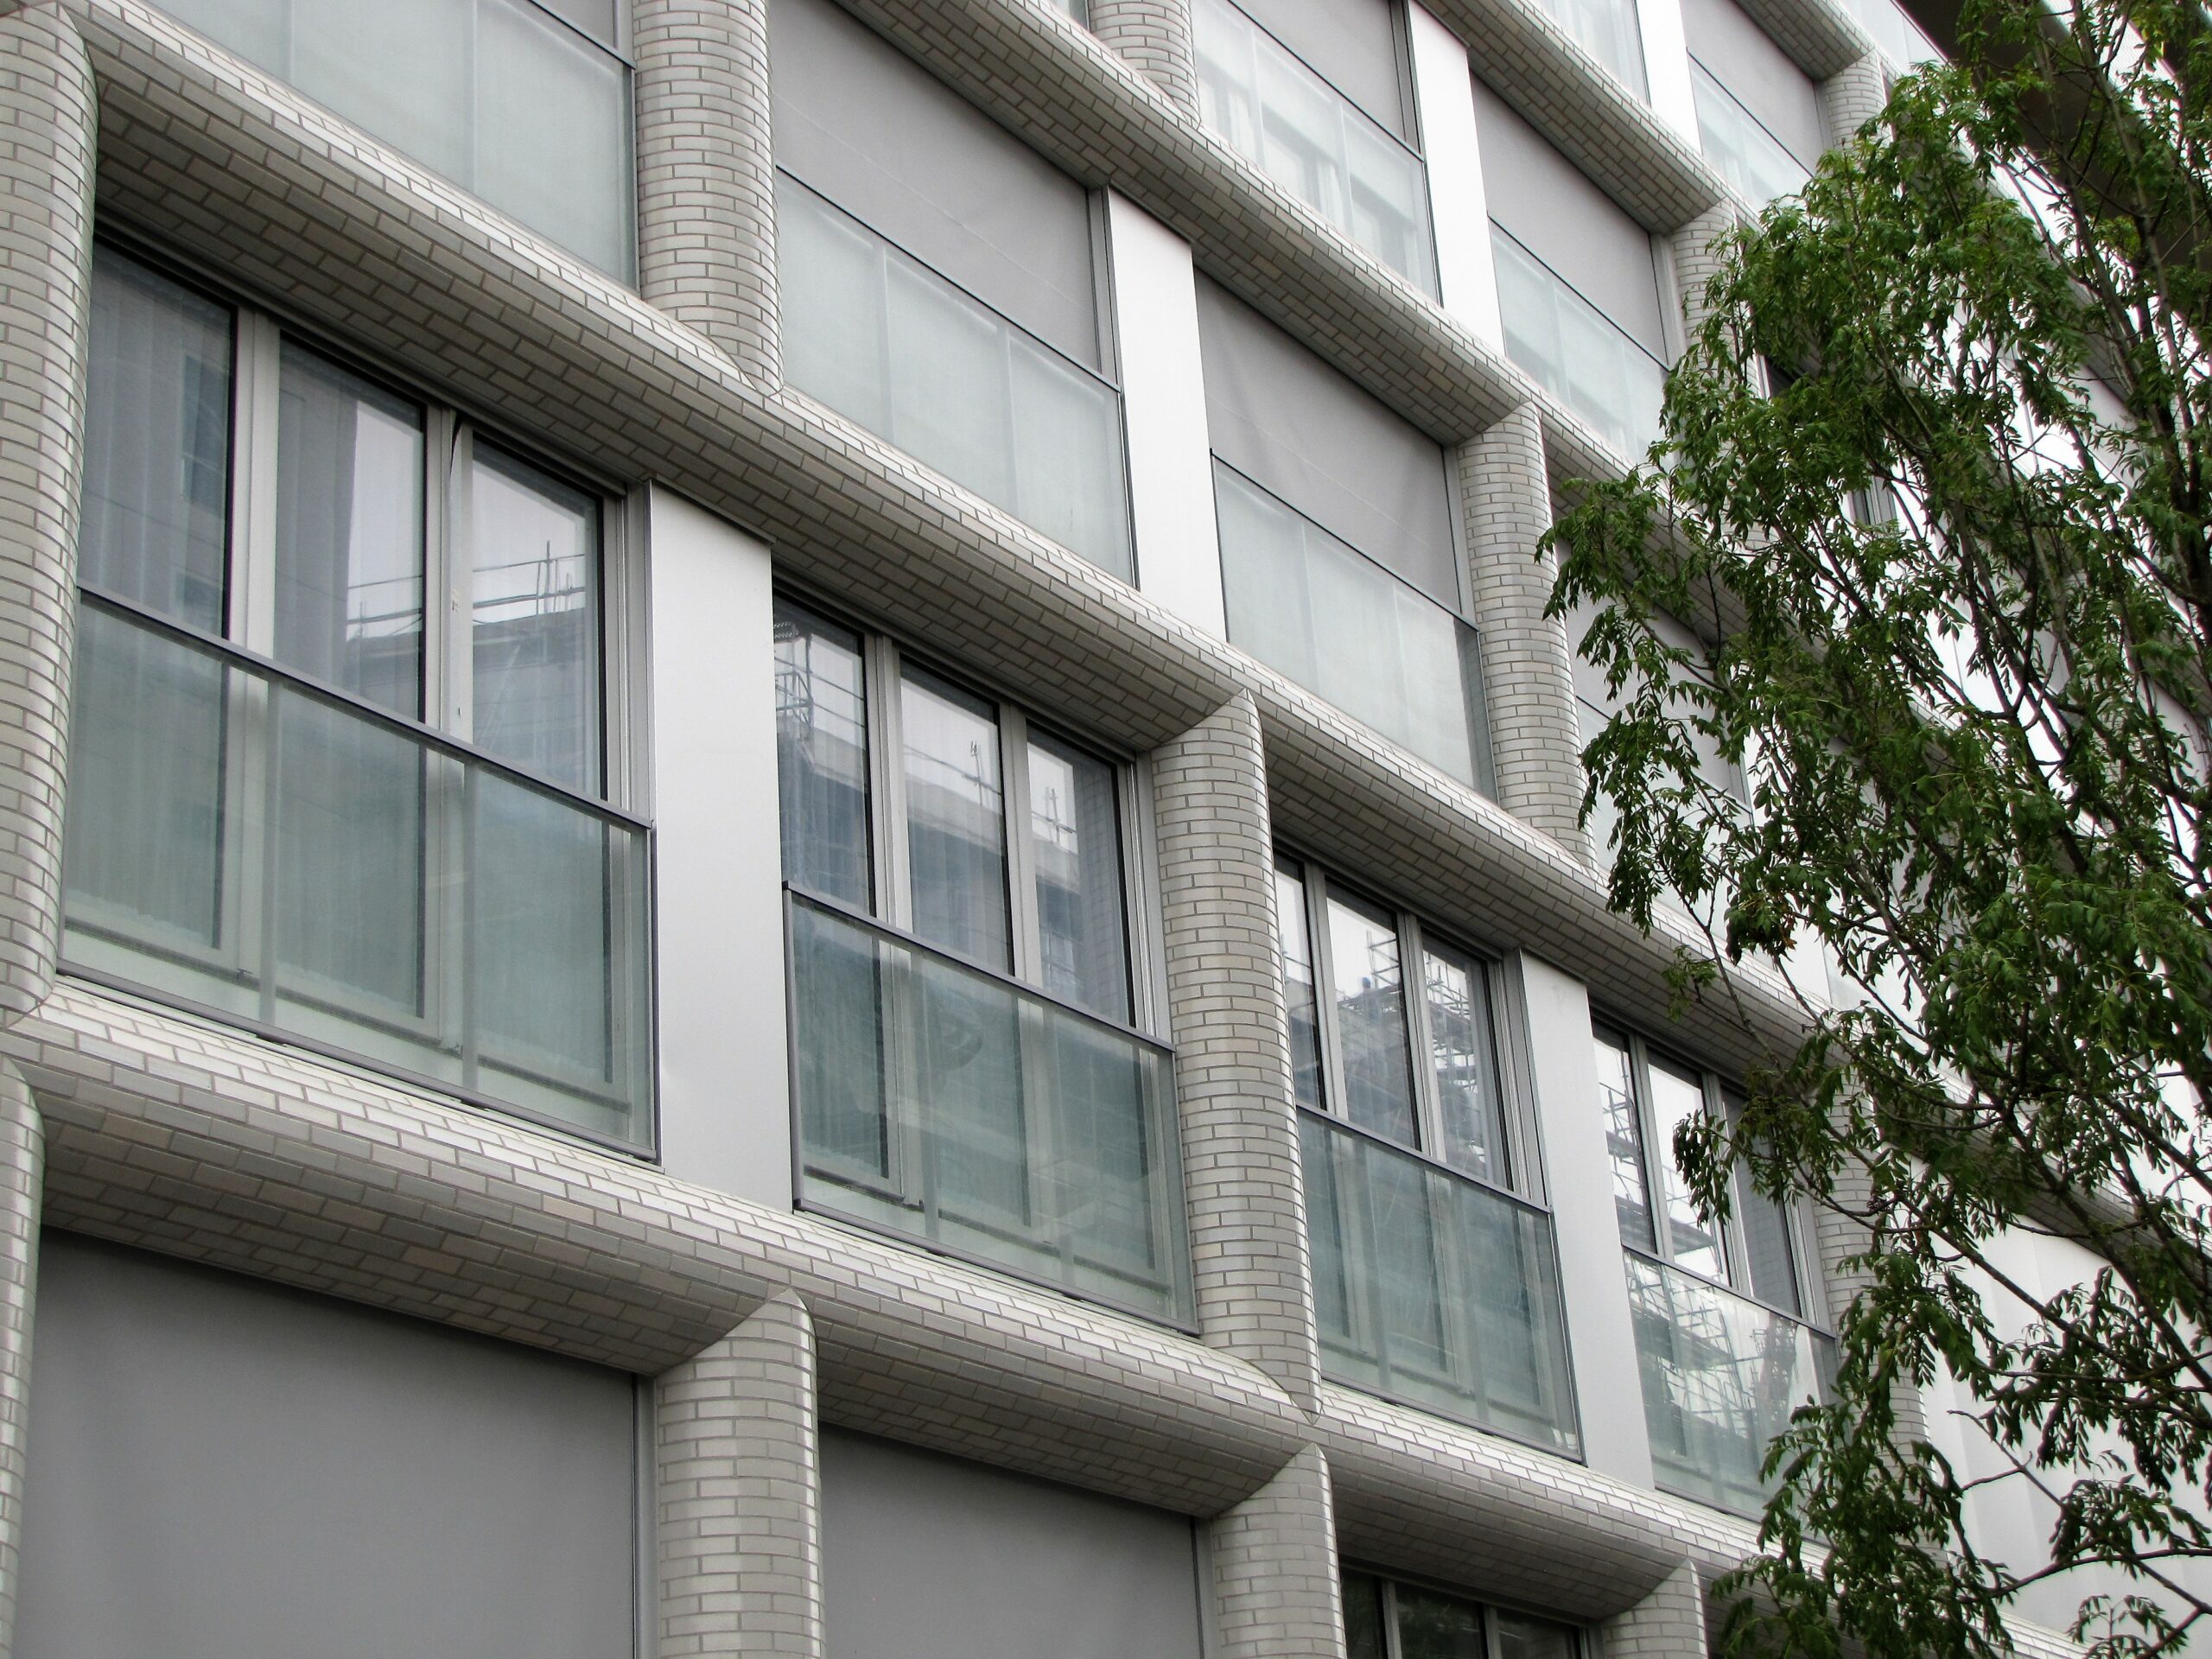 Immeuble de logements à Boulogne-Billancourt (Hauts-de-Seine) Architectes : AZC – Grégoire Zündel et Irina Cristea